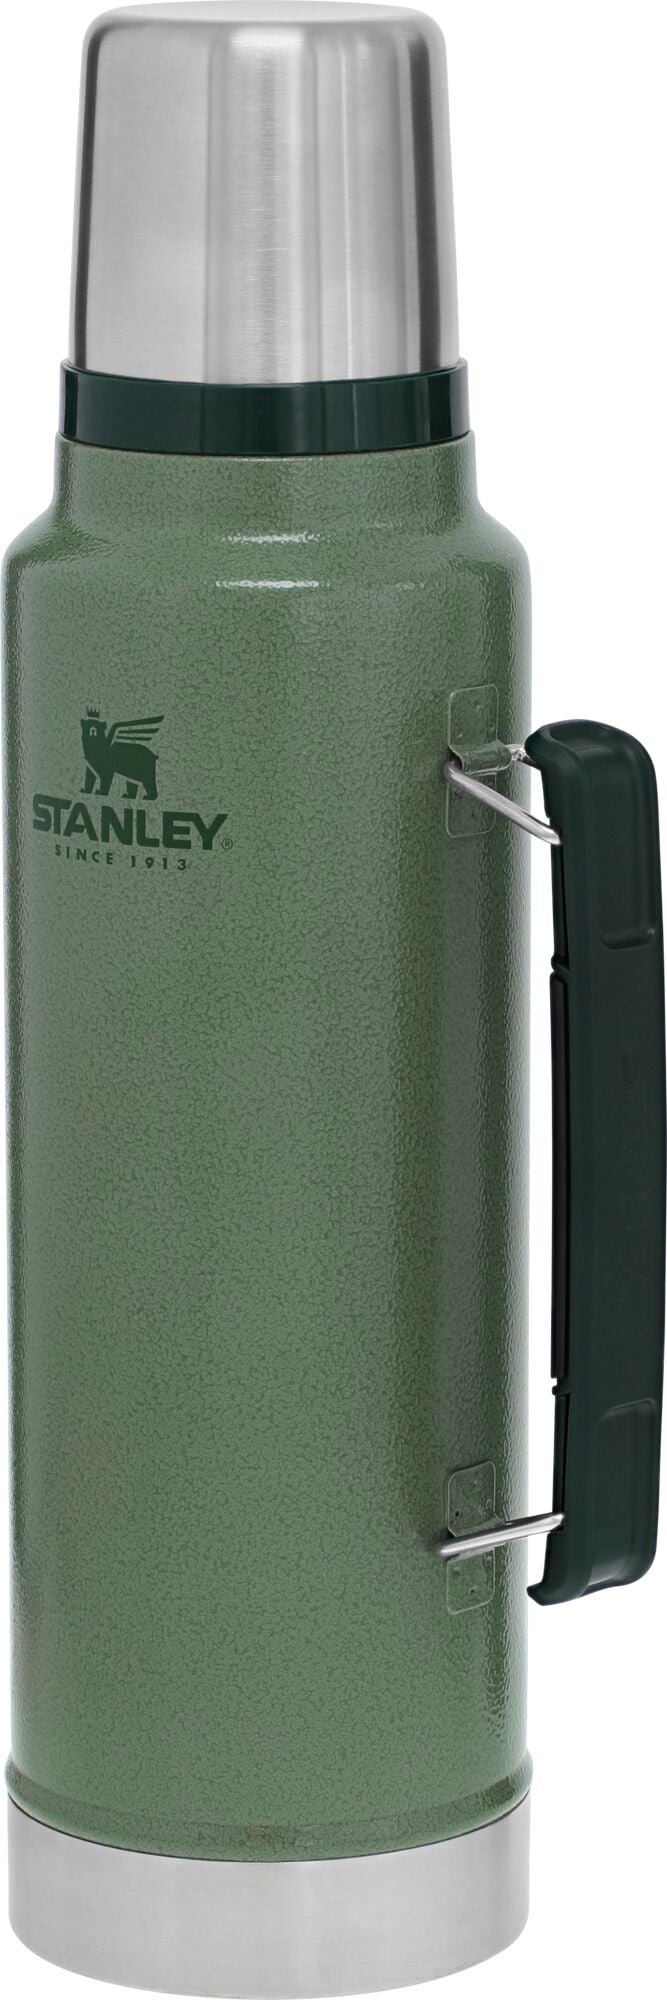 Stanley Classic Legendary Bottle 1.5 Qt. at Hilton's Tent City